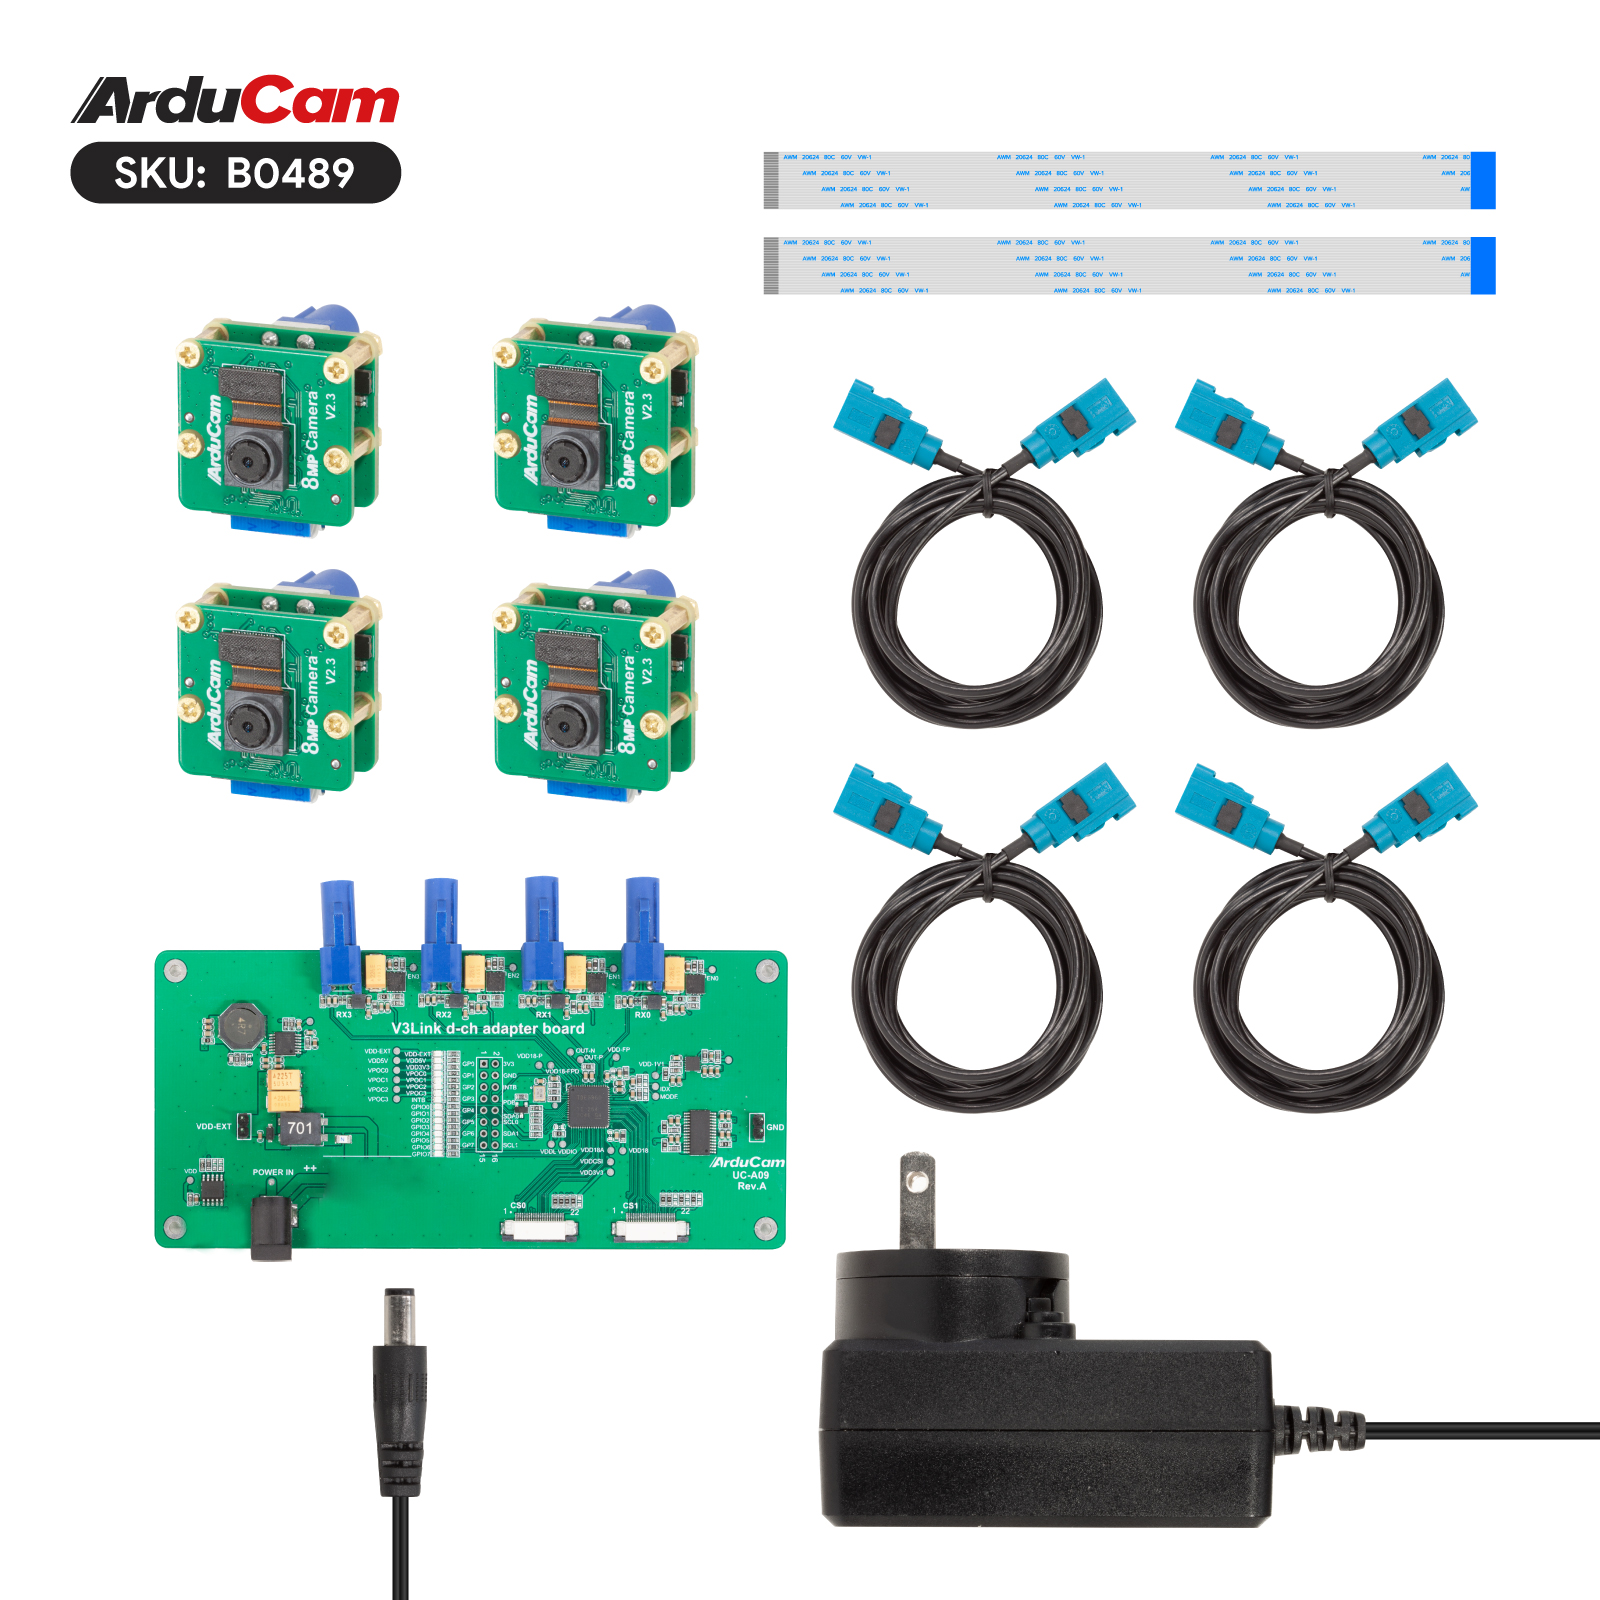 Arducam IMX219 V3Link FPD-Link SerDes Camera Kit for Raspberry Pi - Arducam